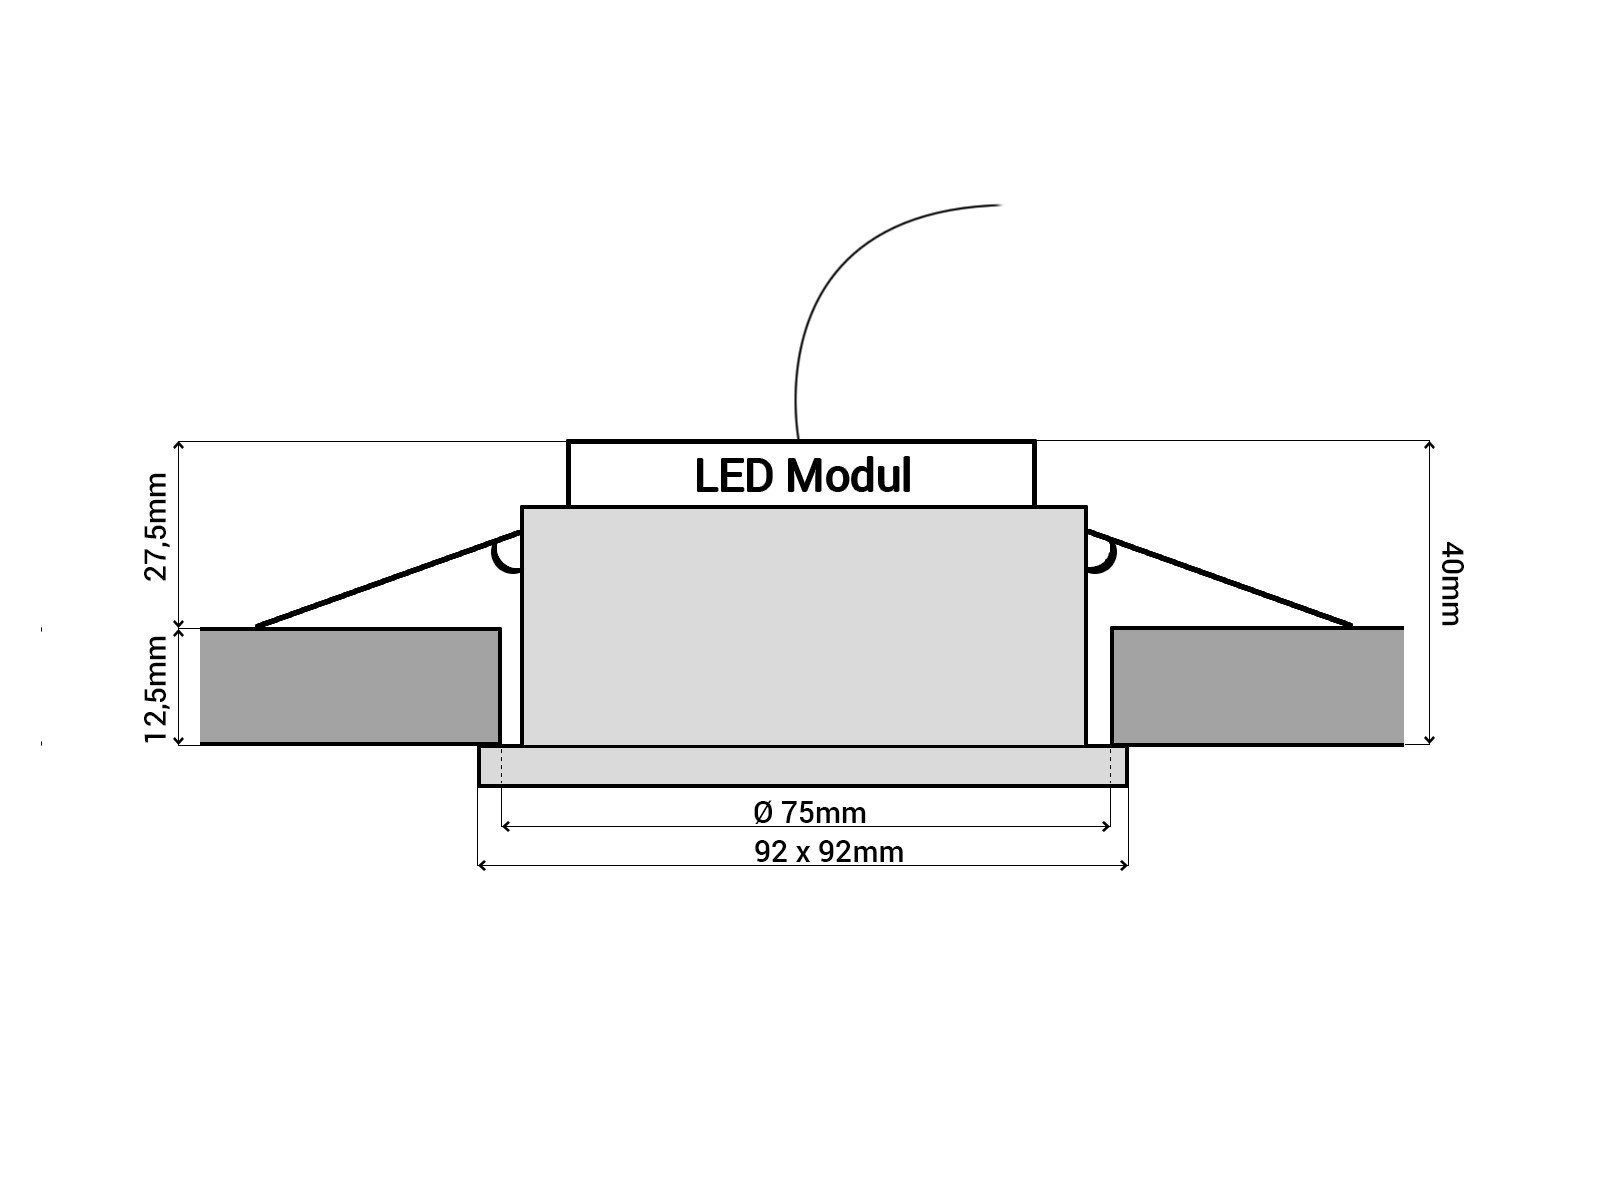 flach LED SSC-LUXon Einbaustrahler LED-Modul schwenkbar QF-2 230V, 6W, Warmweiß LED-Einbauspot mit Alu